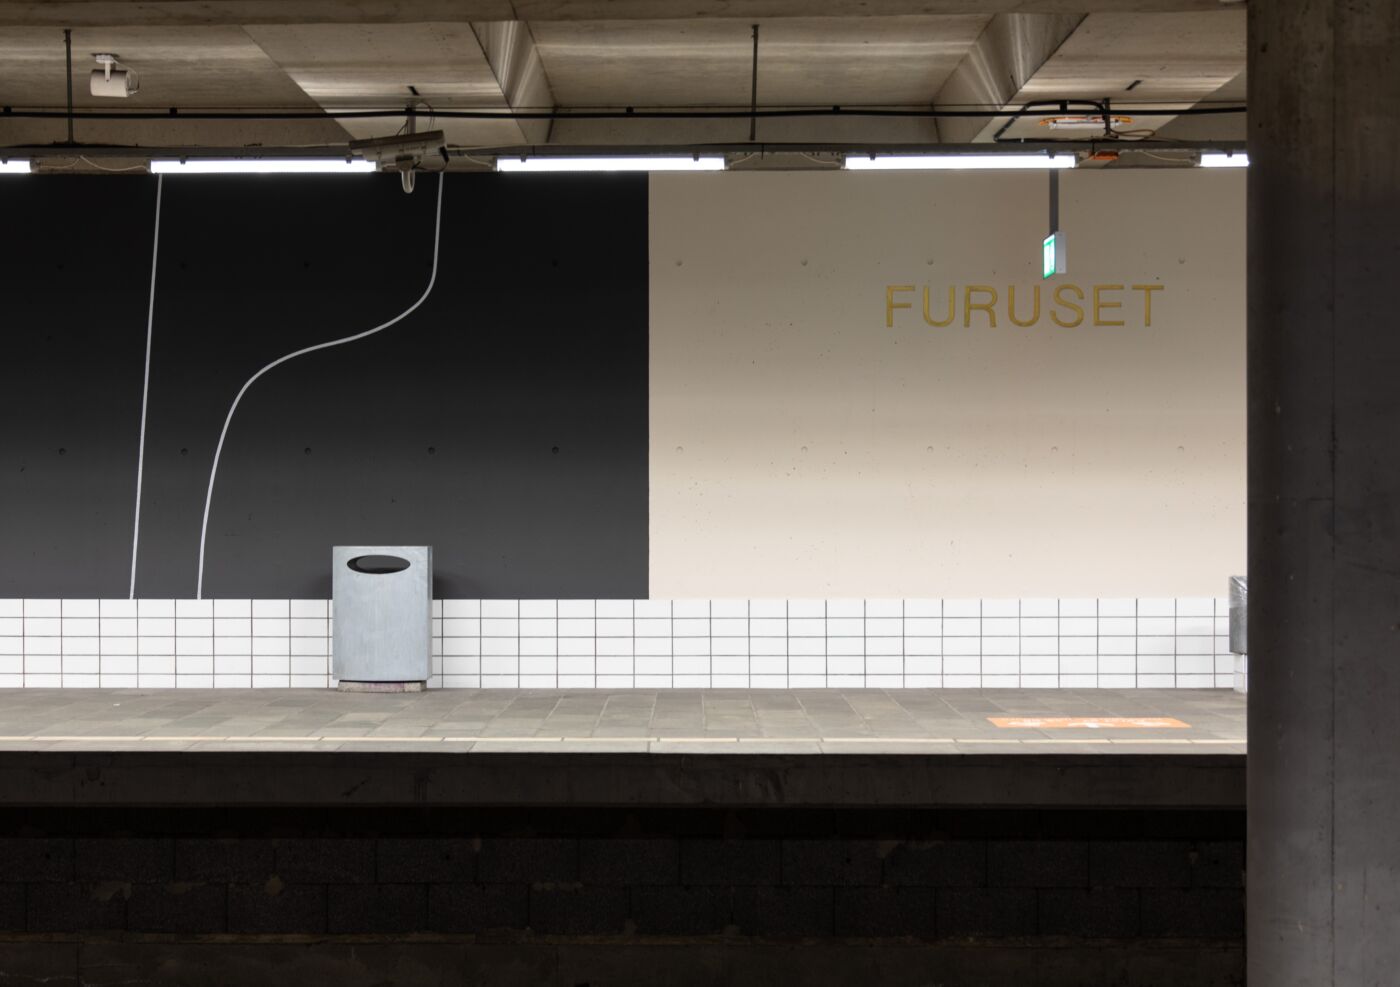 Foto av en t-baneperrong med veggmaleri og teksten "Furuset" skrevet på veggen.